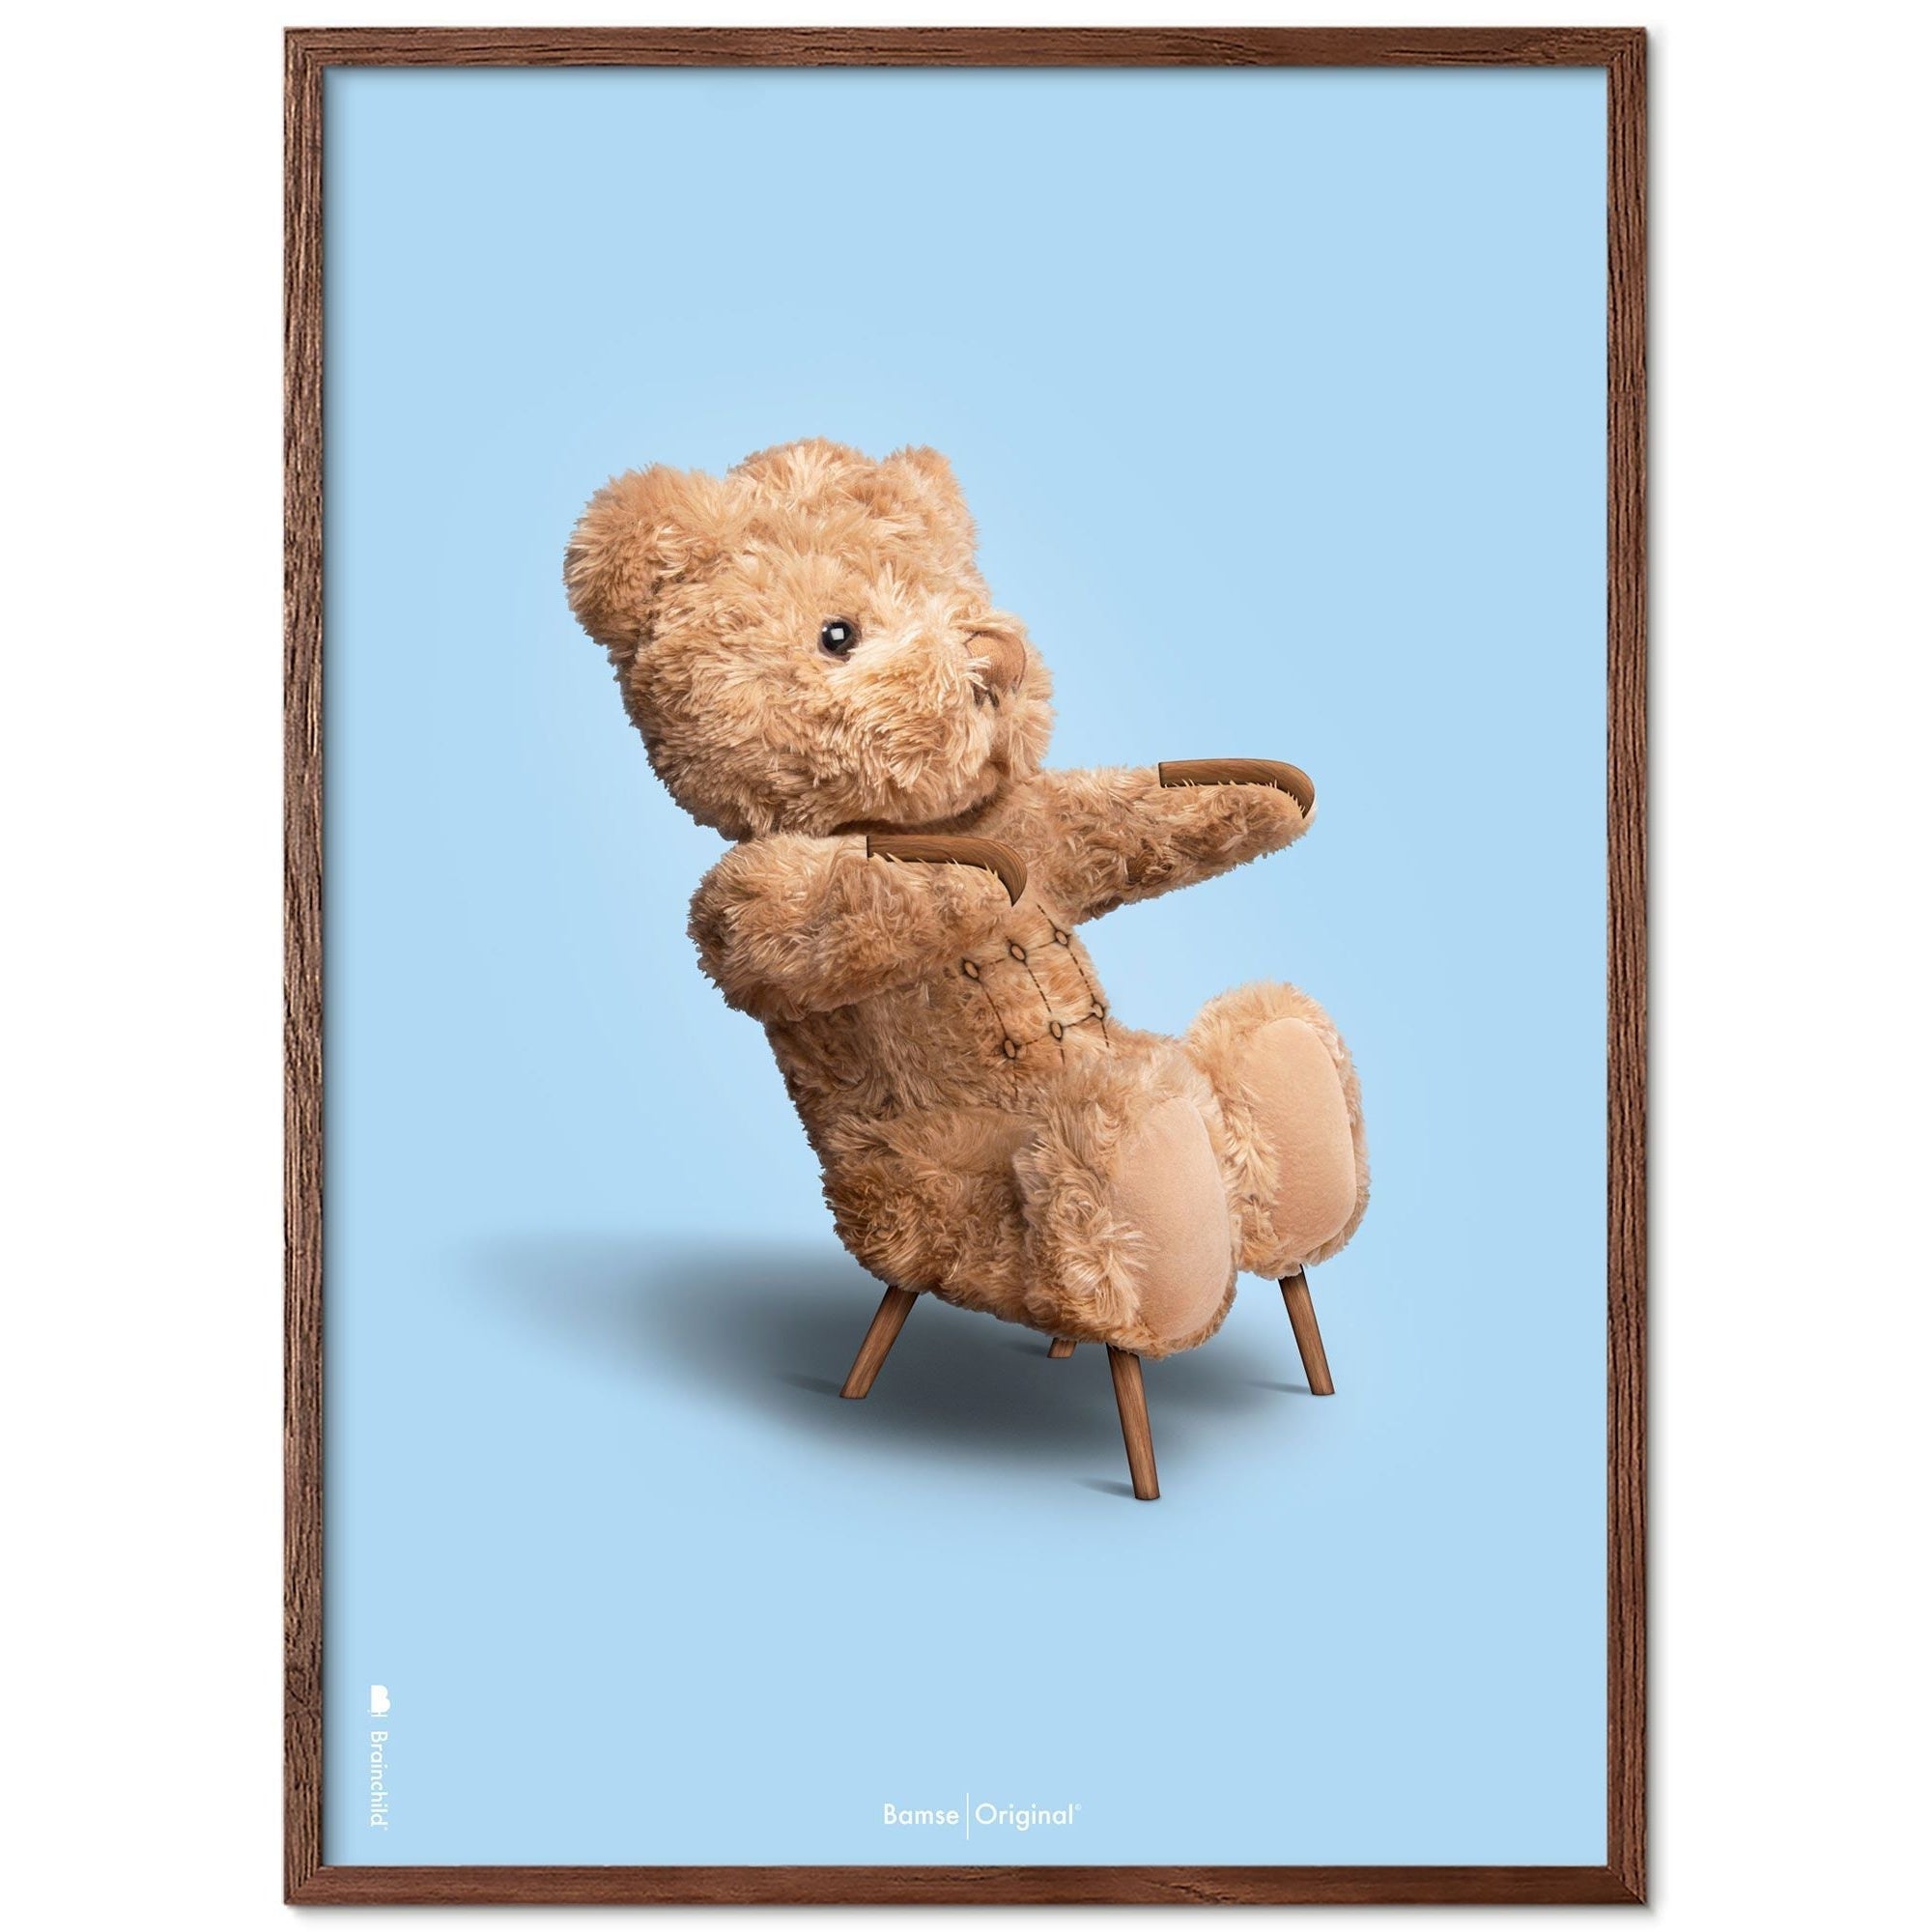 Brainchild Teddybär Classic Posterrahmen aus dunklem Holz Ram 50x70 cm, hellblauer Hintergrund